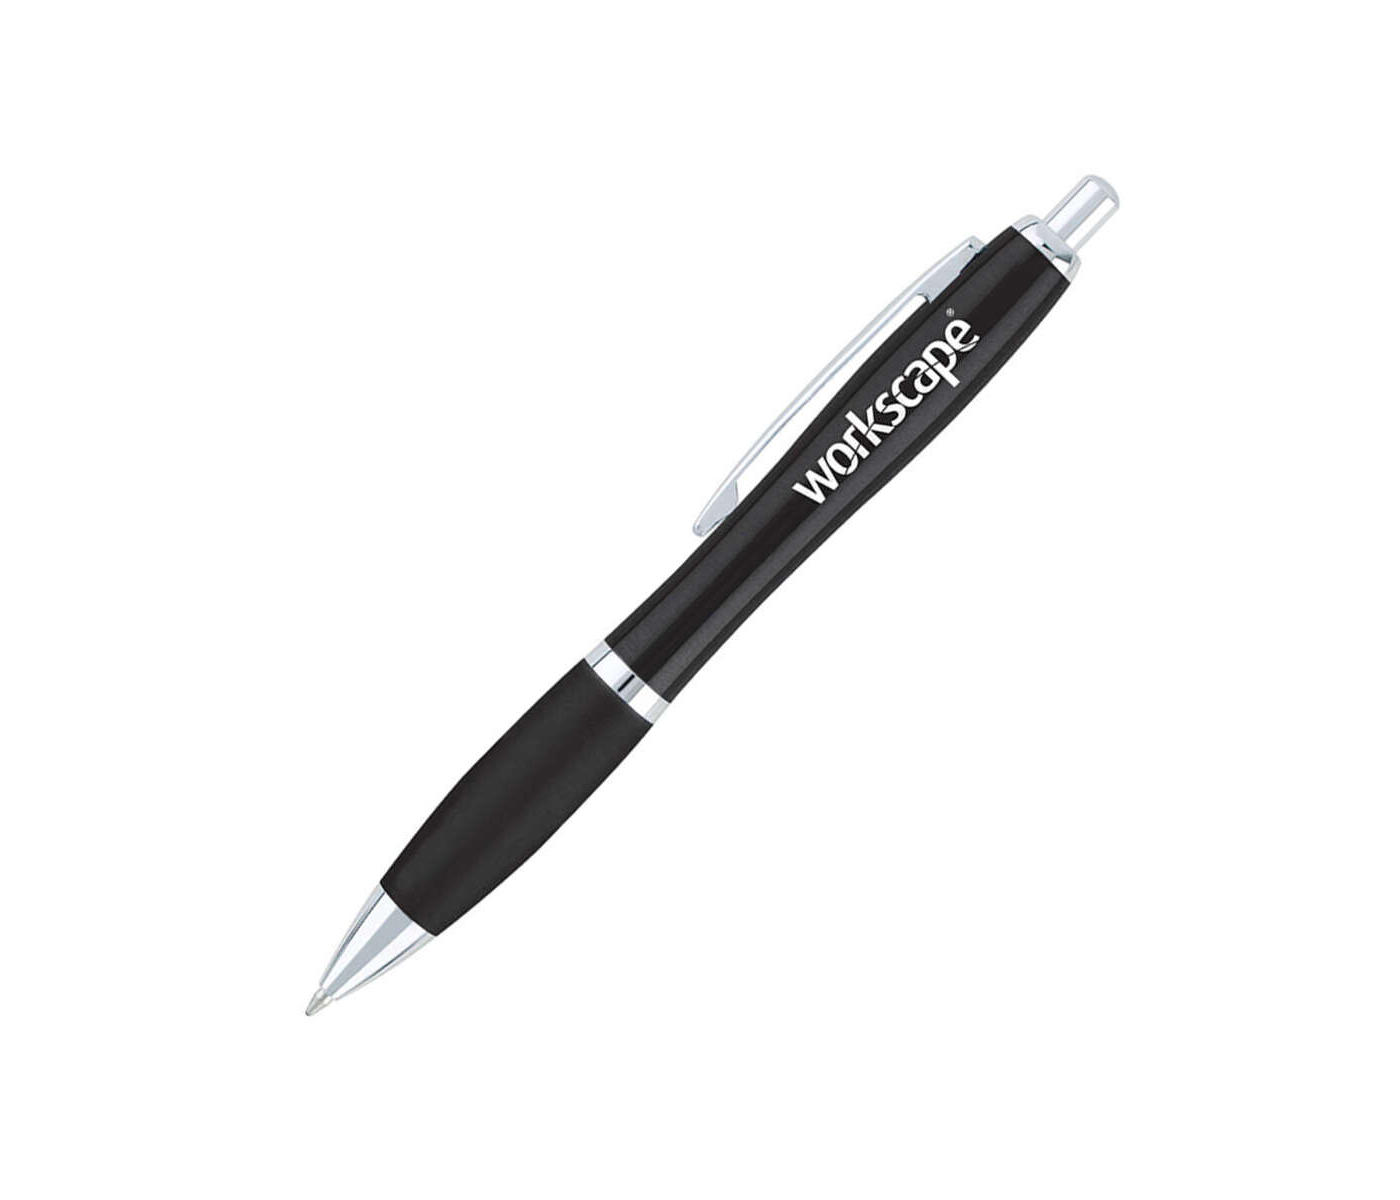 Curvaceous Metal Ballpoint Pen